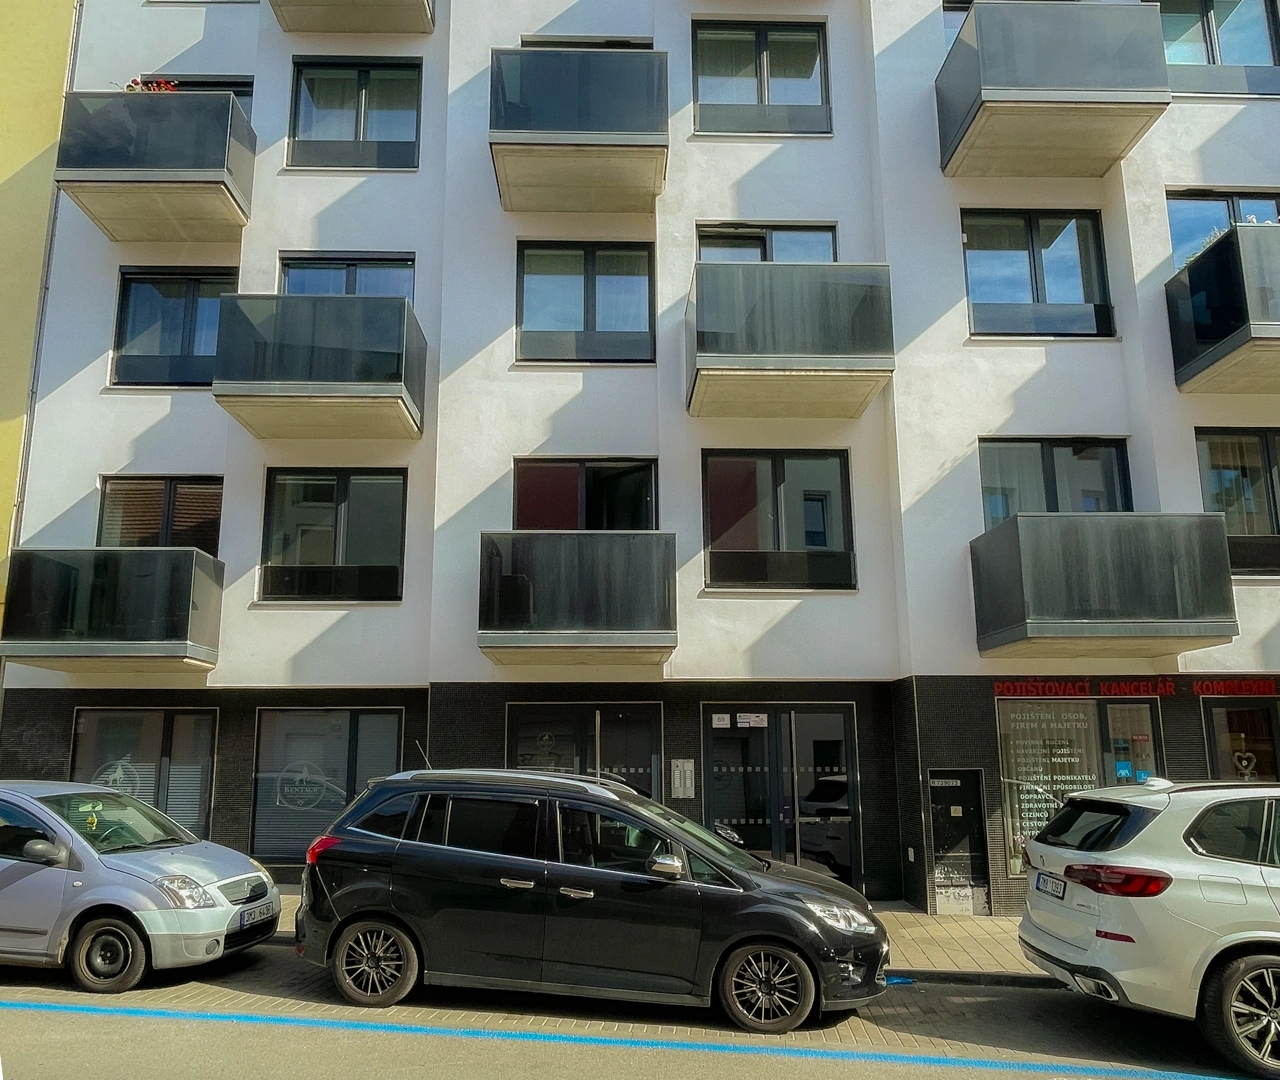 Moderní a vybavený byt s parkovacím stáním v blízkosti centra, na ulici Francouzská v Brně